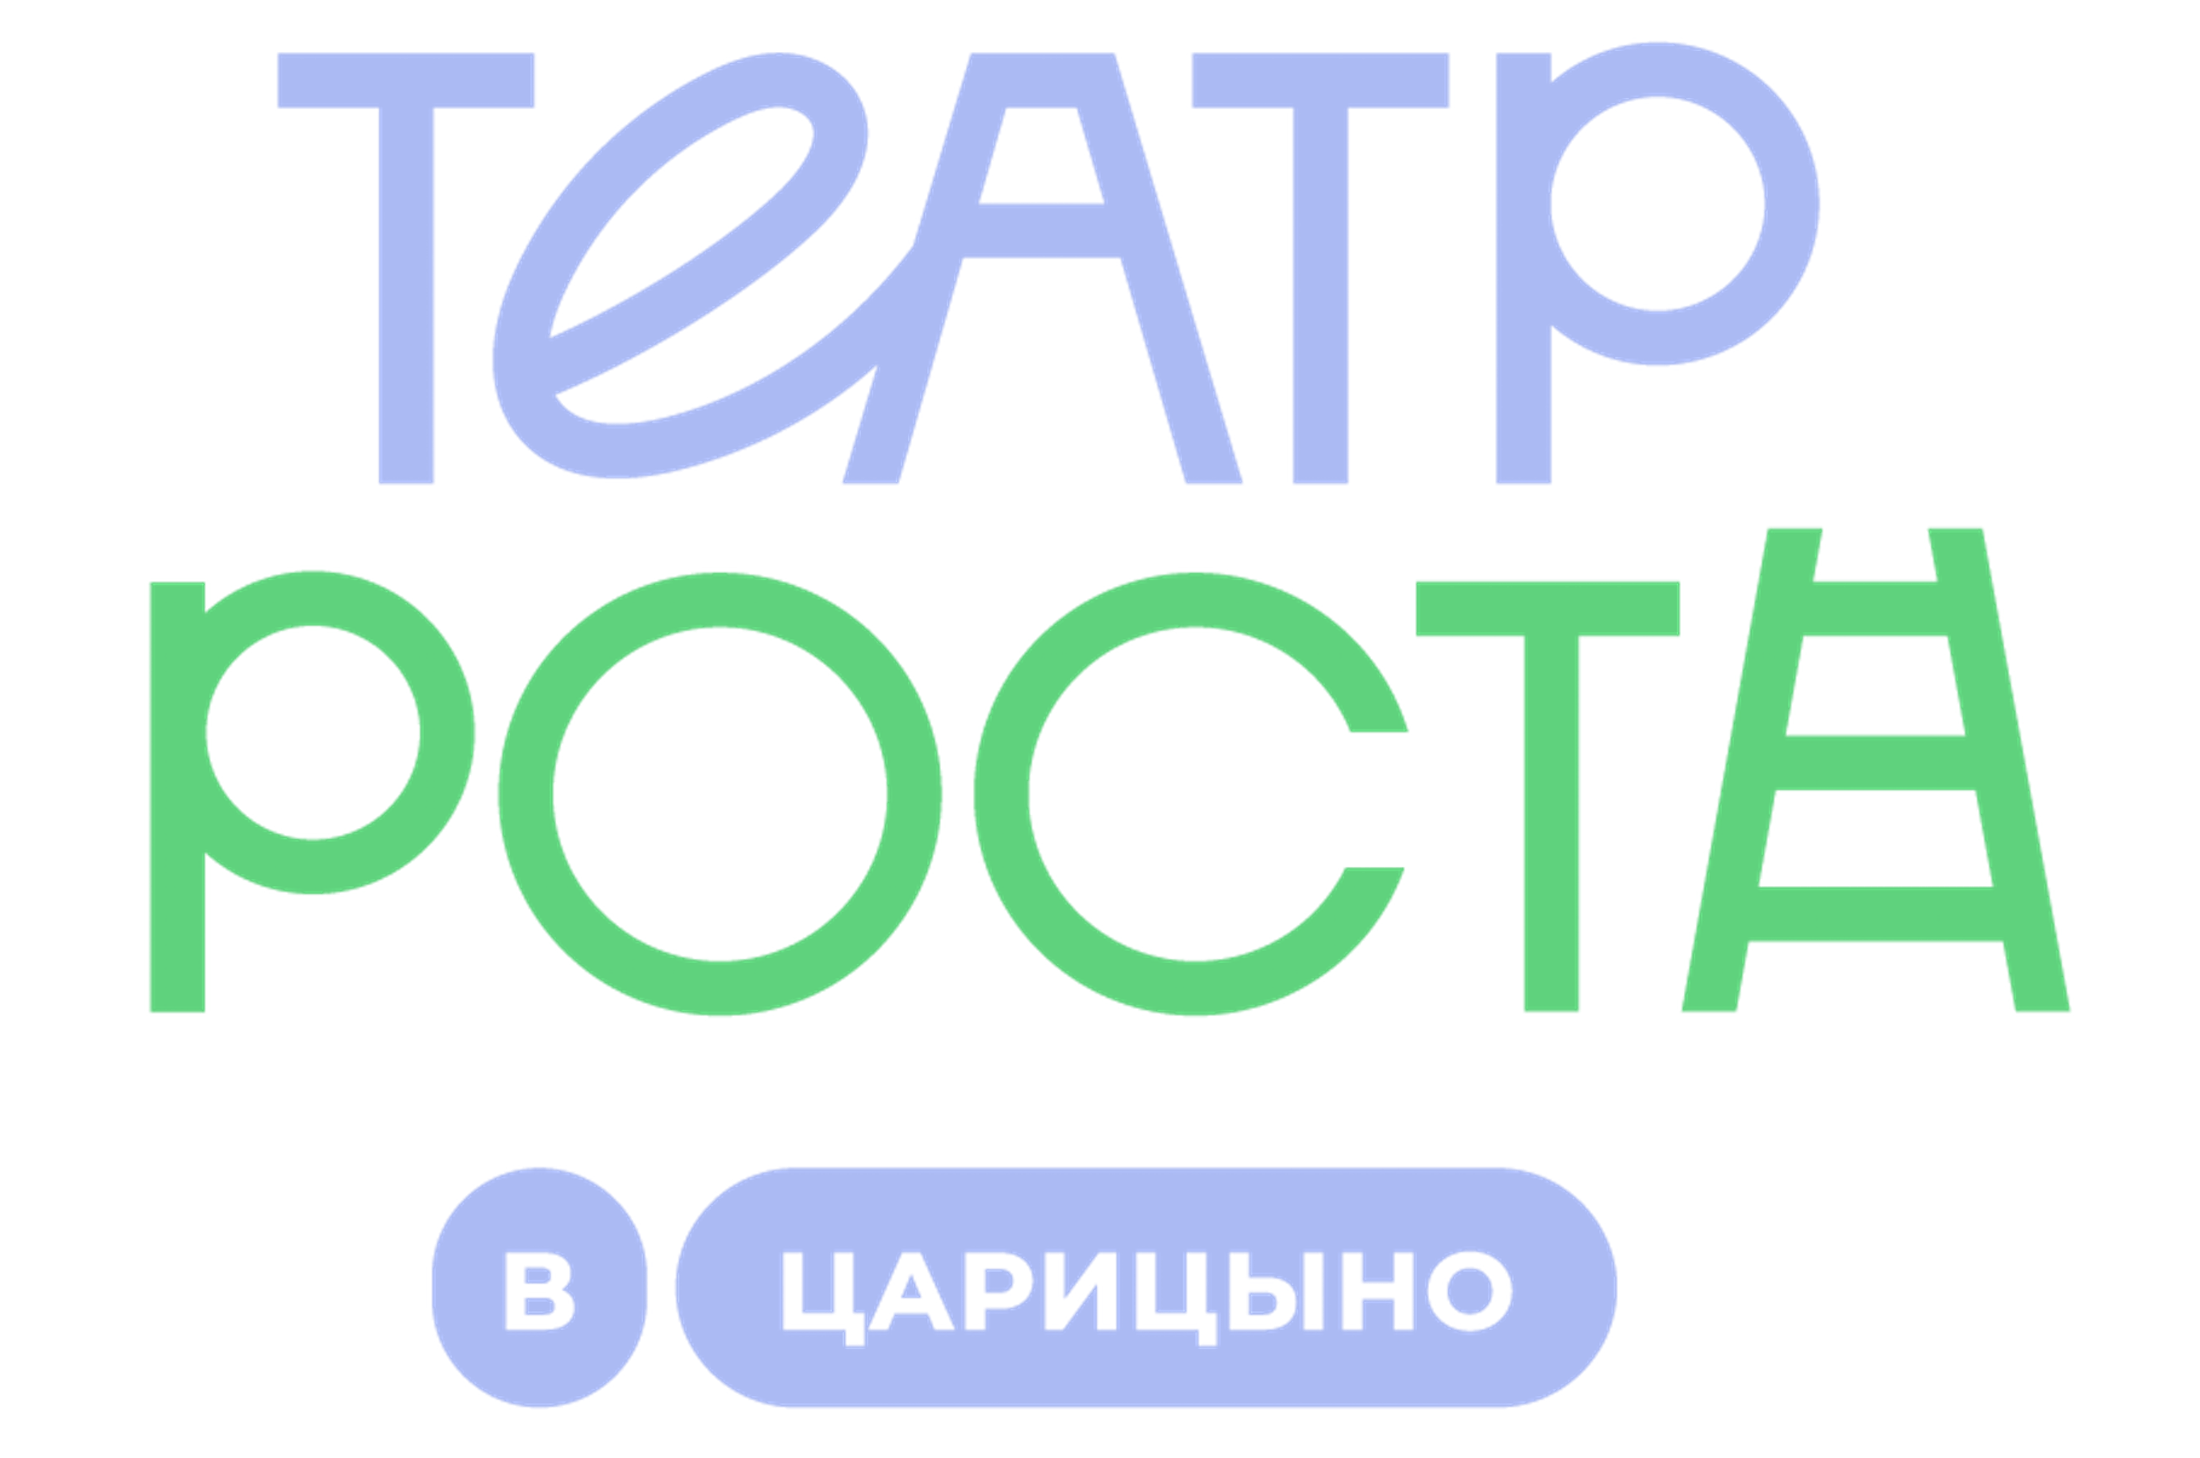 Московский государственный Театр РОСТА в Царицыно